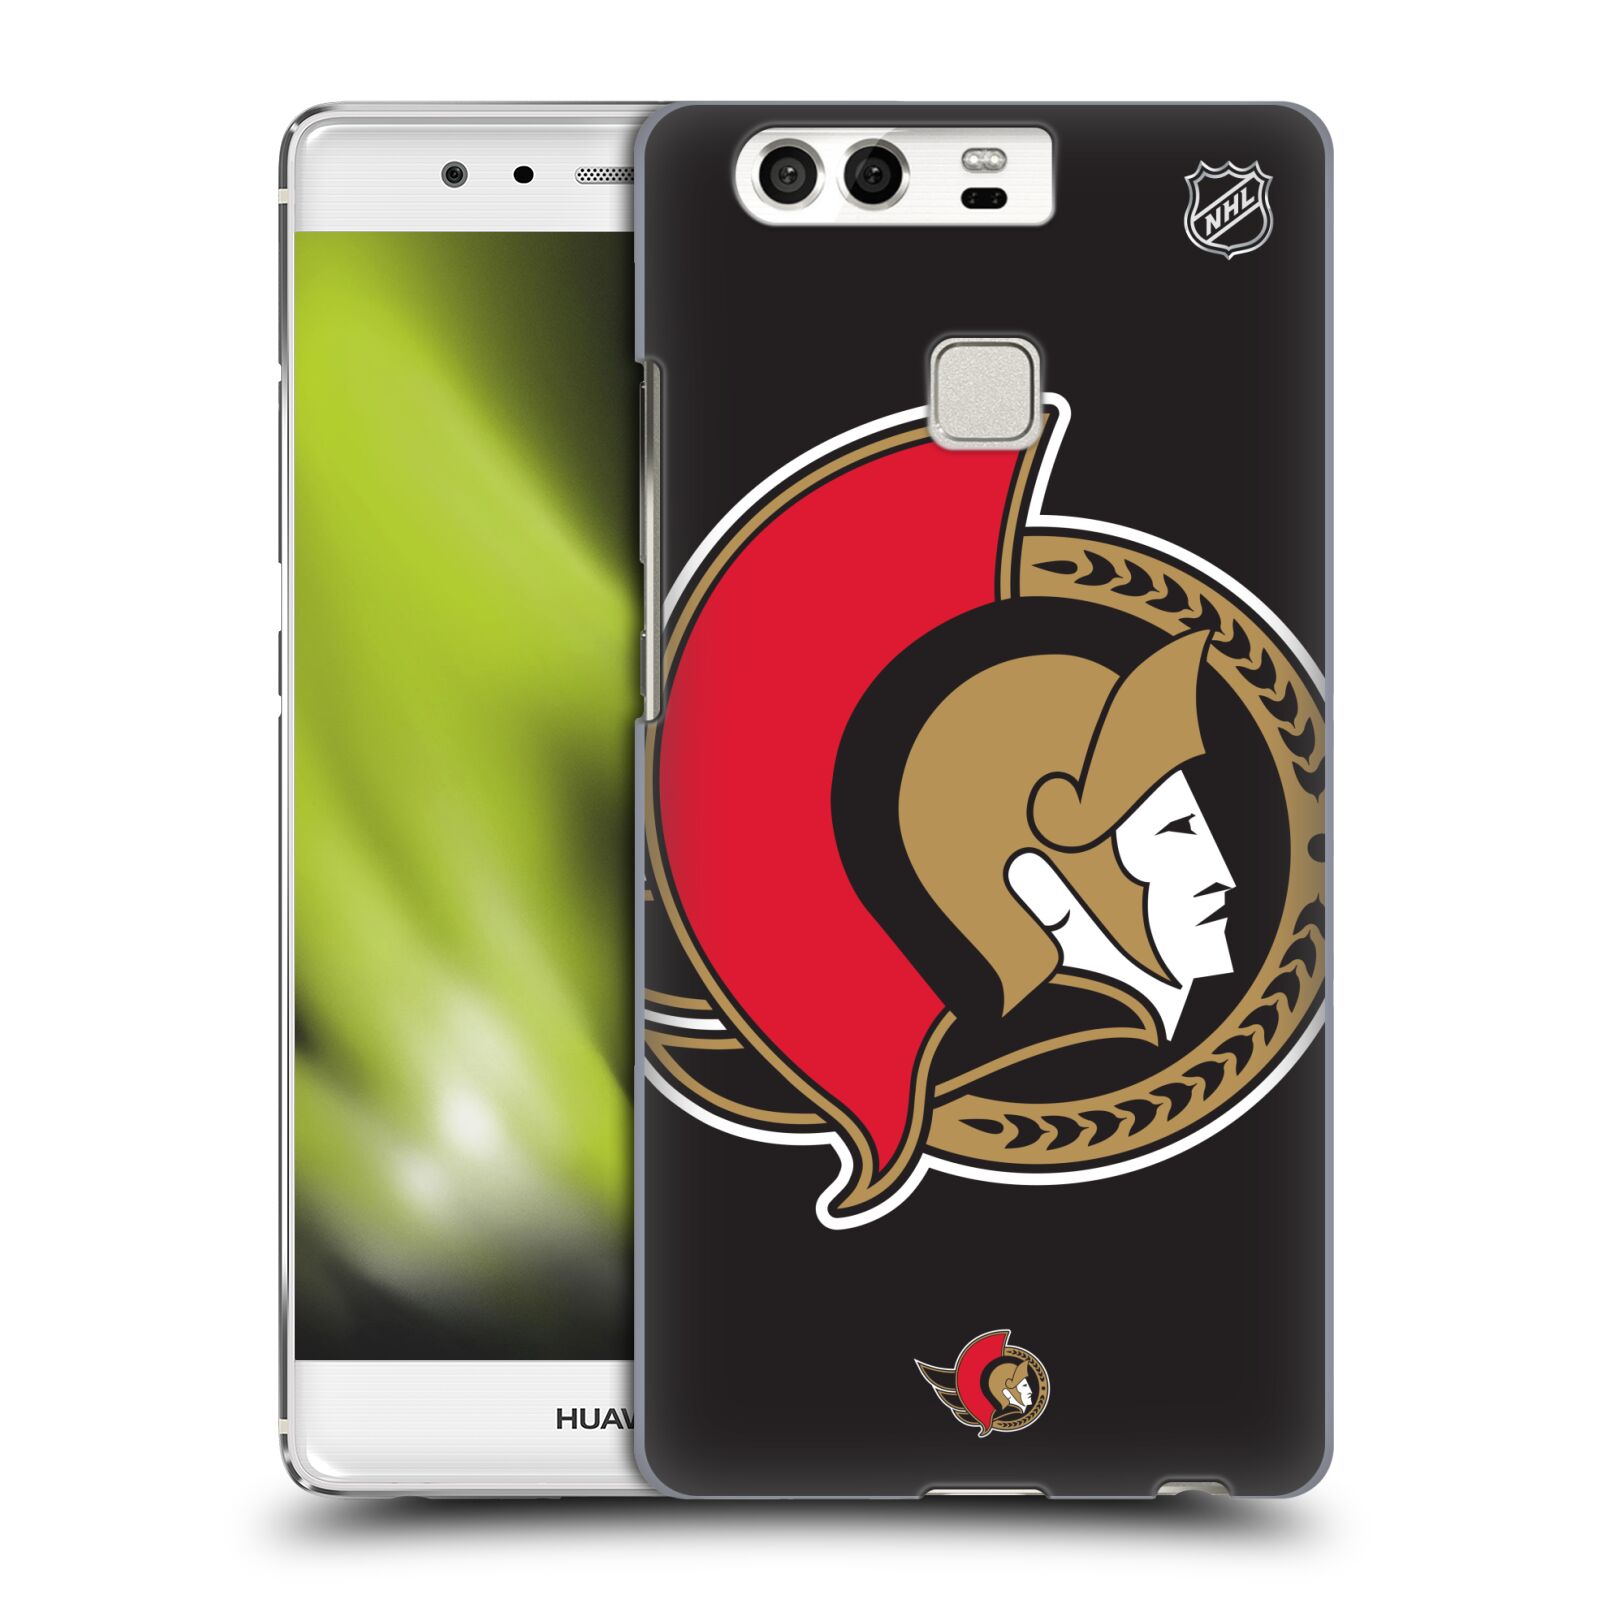 Pouzdro na mobil Huawei P9 / P9 DUAL SIM - HEAD CASE - Hokej NHL - Ottawa Senators - Velký znak